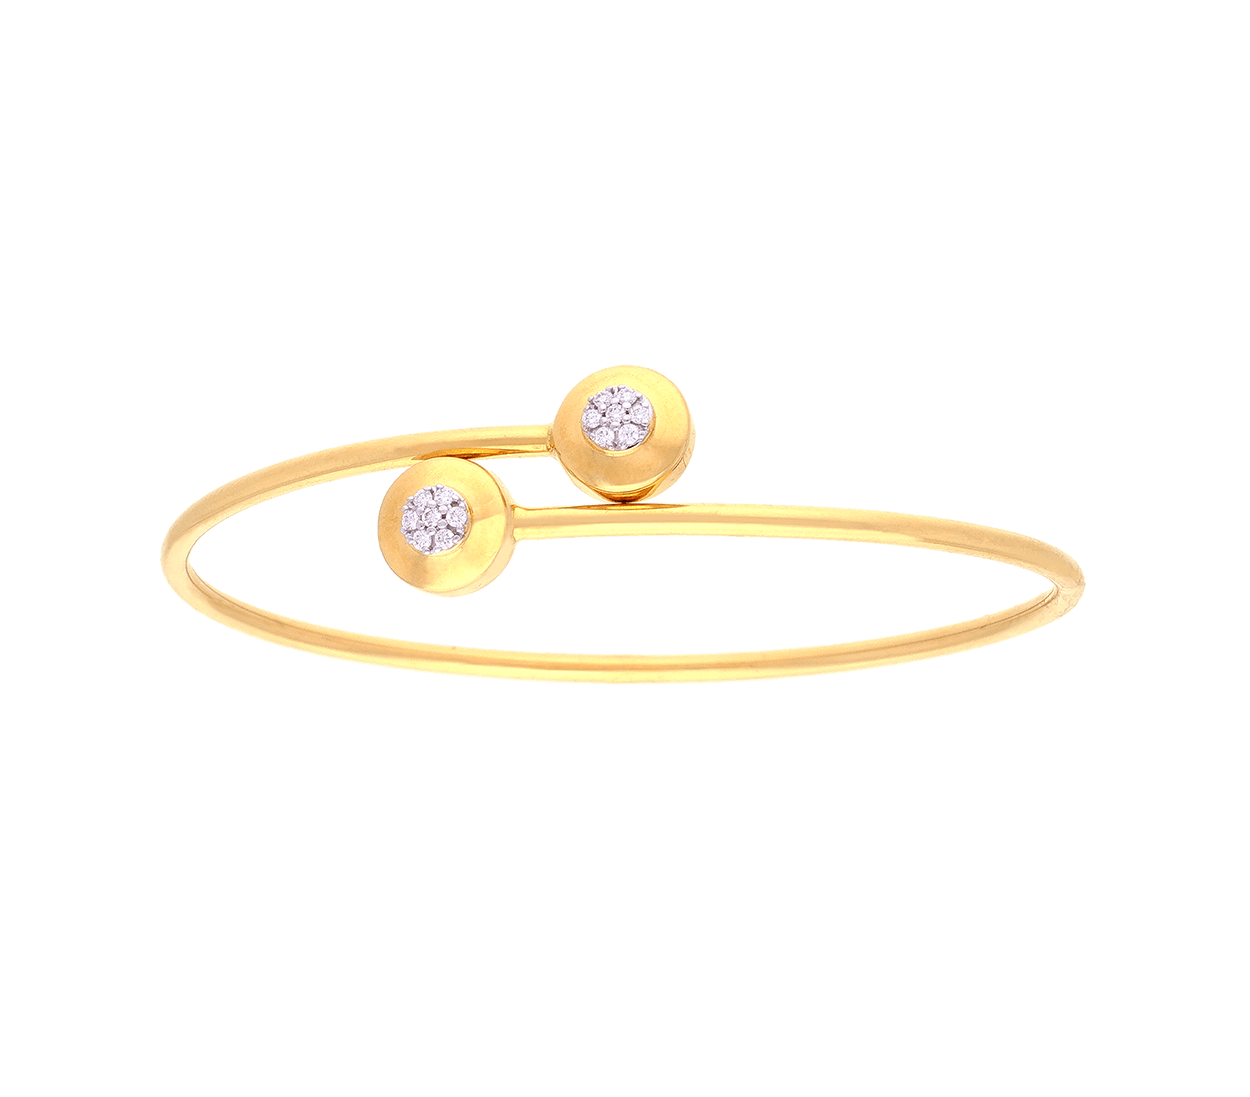 Diamond Bracelets for Women - Jos Alukkas Online Shopping